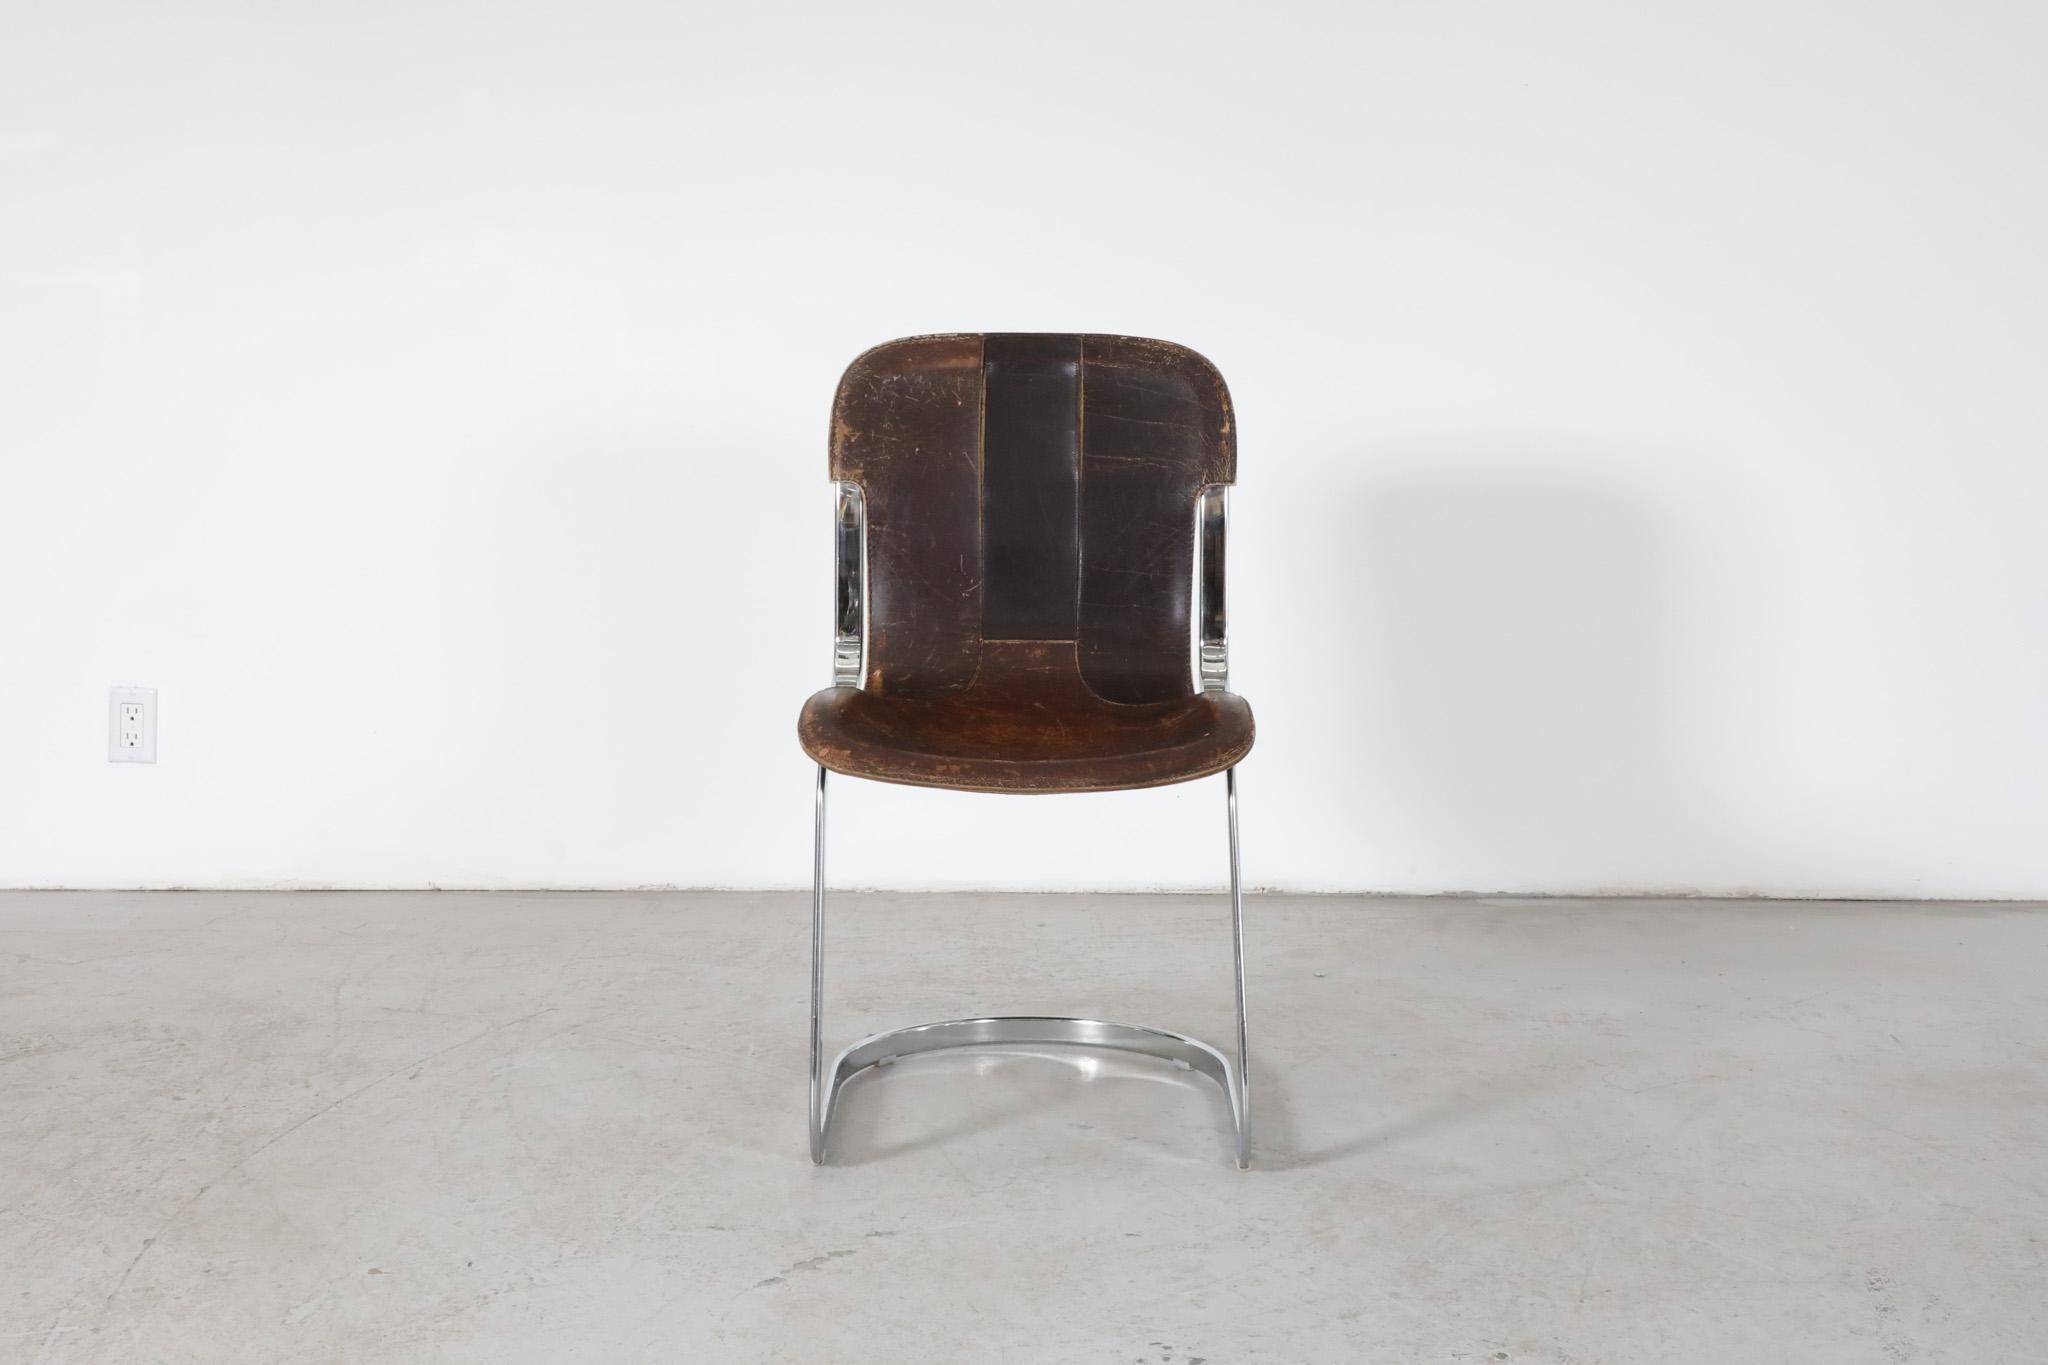 Stuhl aus Stahl und Leder aus der Mitte des Jahrhunderts, entworfen von Willy Rizzo für das italienische Designhaus Cidue. Originaler Zustand mit sichtbaren Abnutzungserscheinungen und starker Patina, entsprechend dem Alter und dem Gebrauch. Die